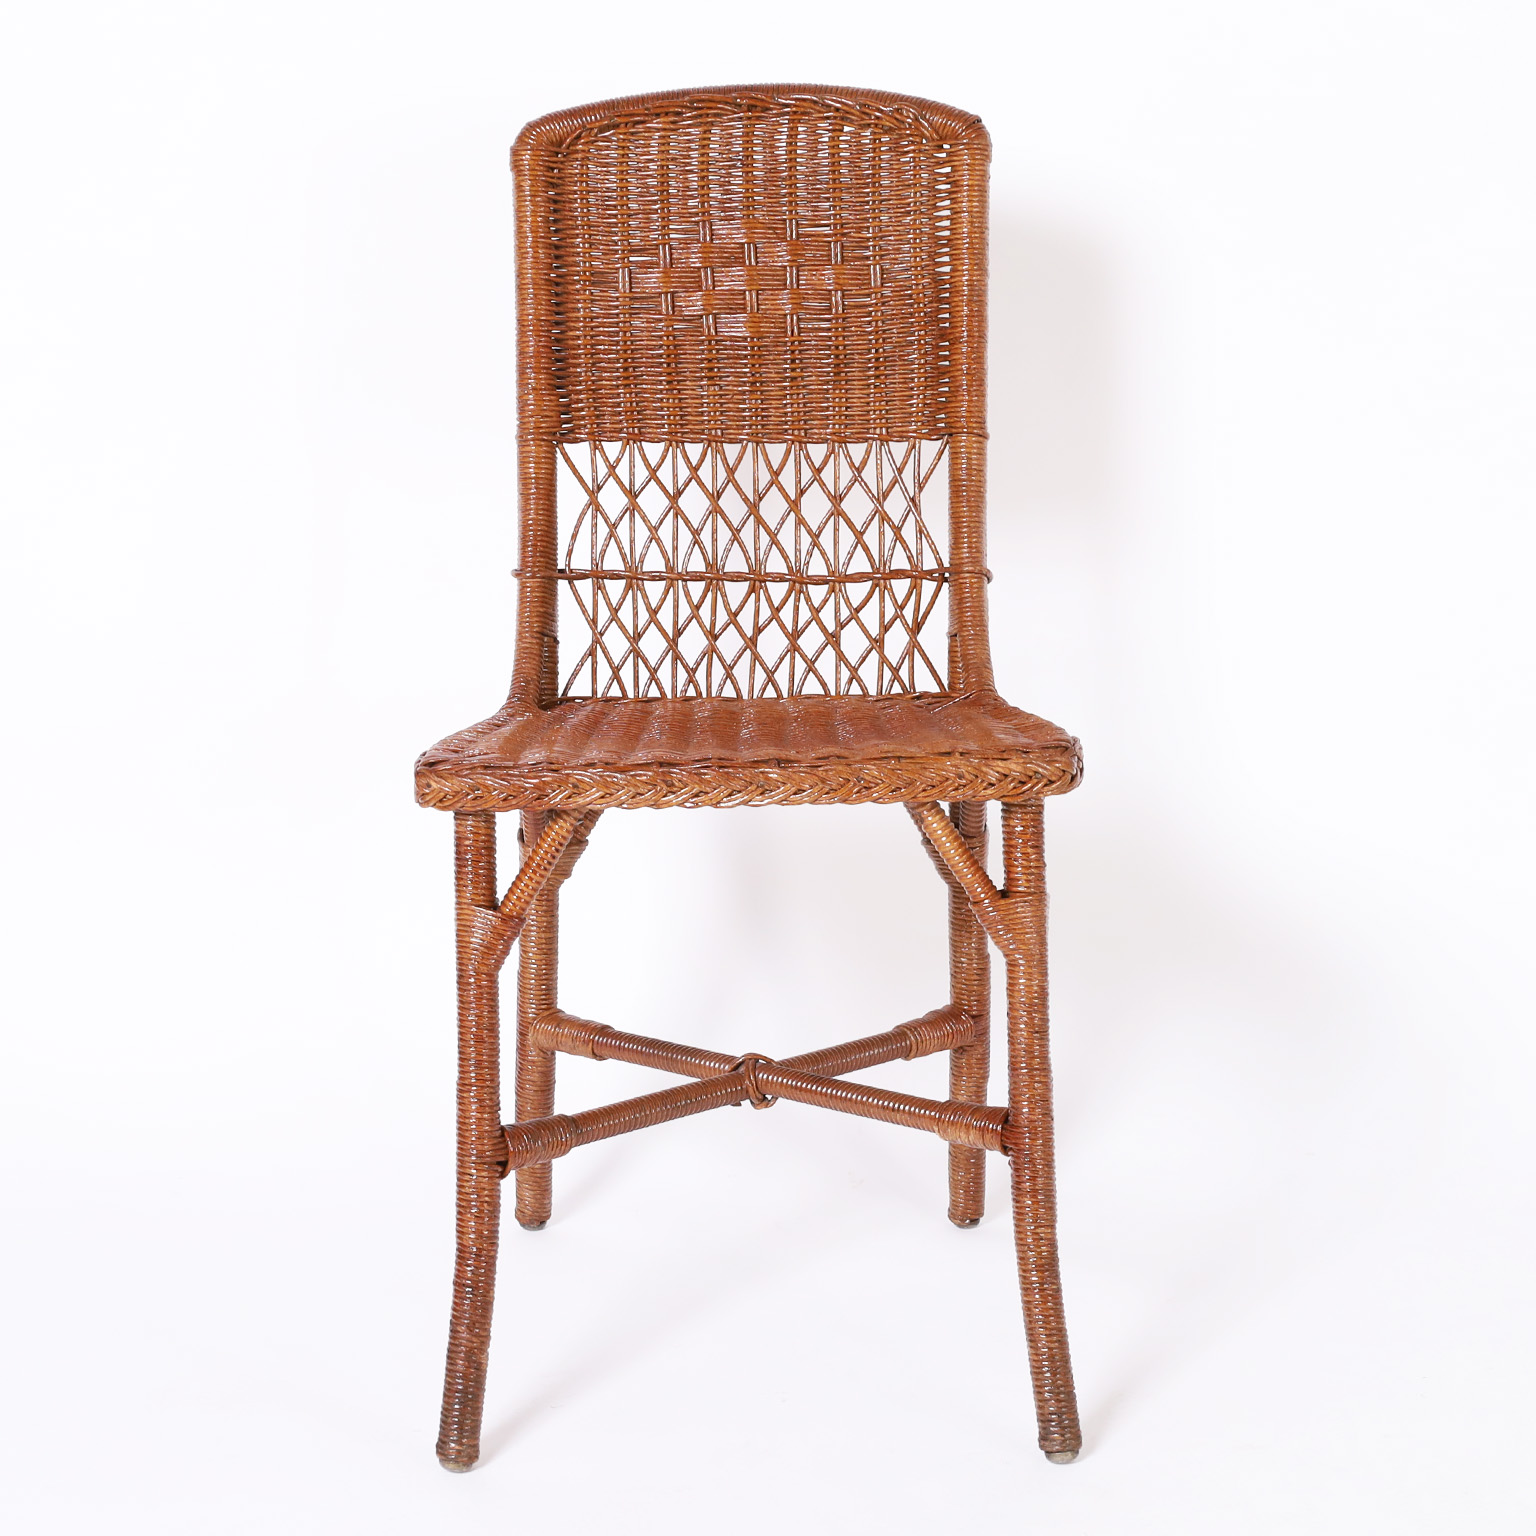 Set of Twelve Vintage Wicker Dining Chairs